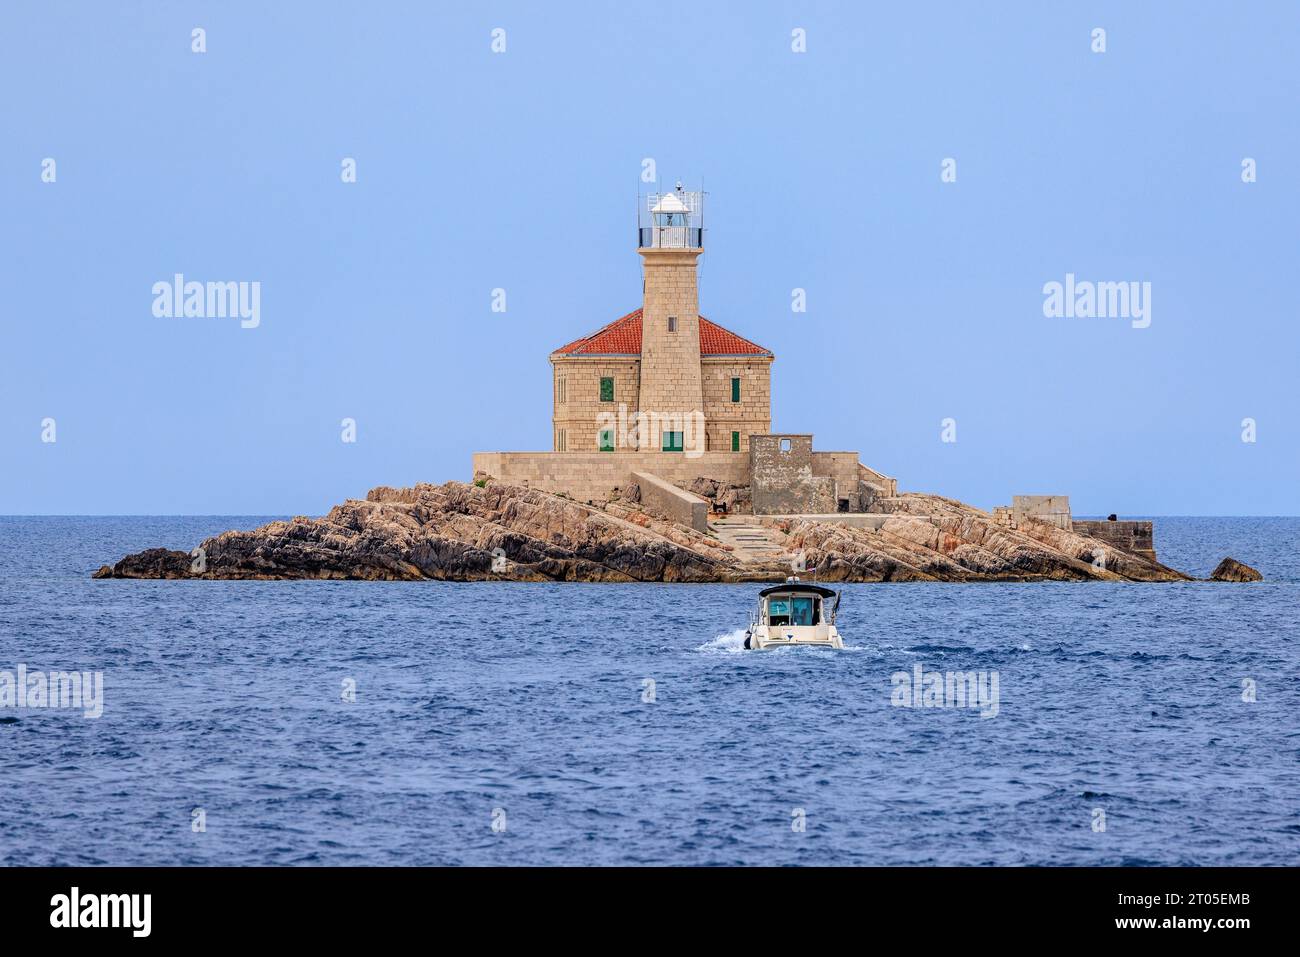 un pequeño barco taxi se acerca al faro de mulo en una pequeña isla rocosa en la costa croata Foto de stock